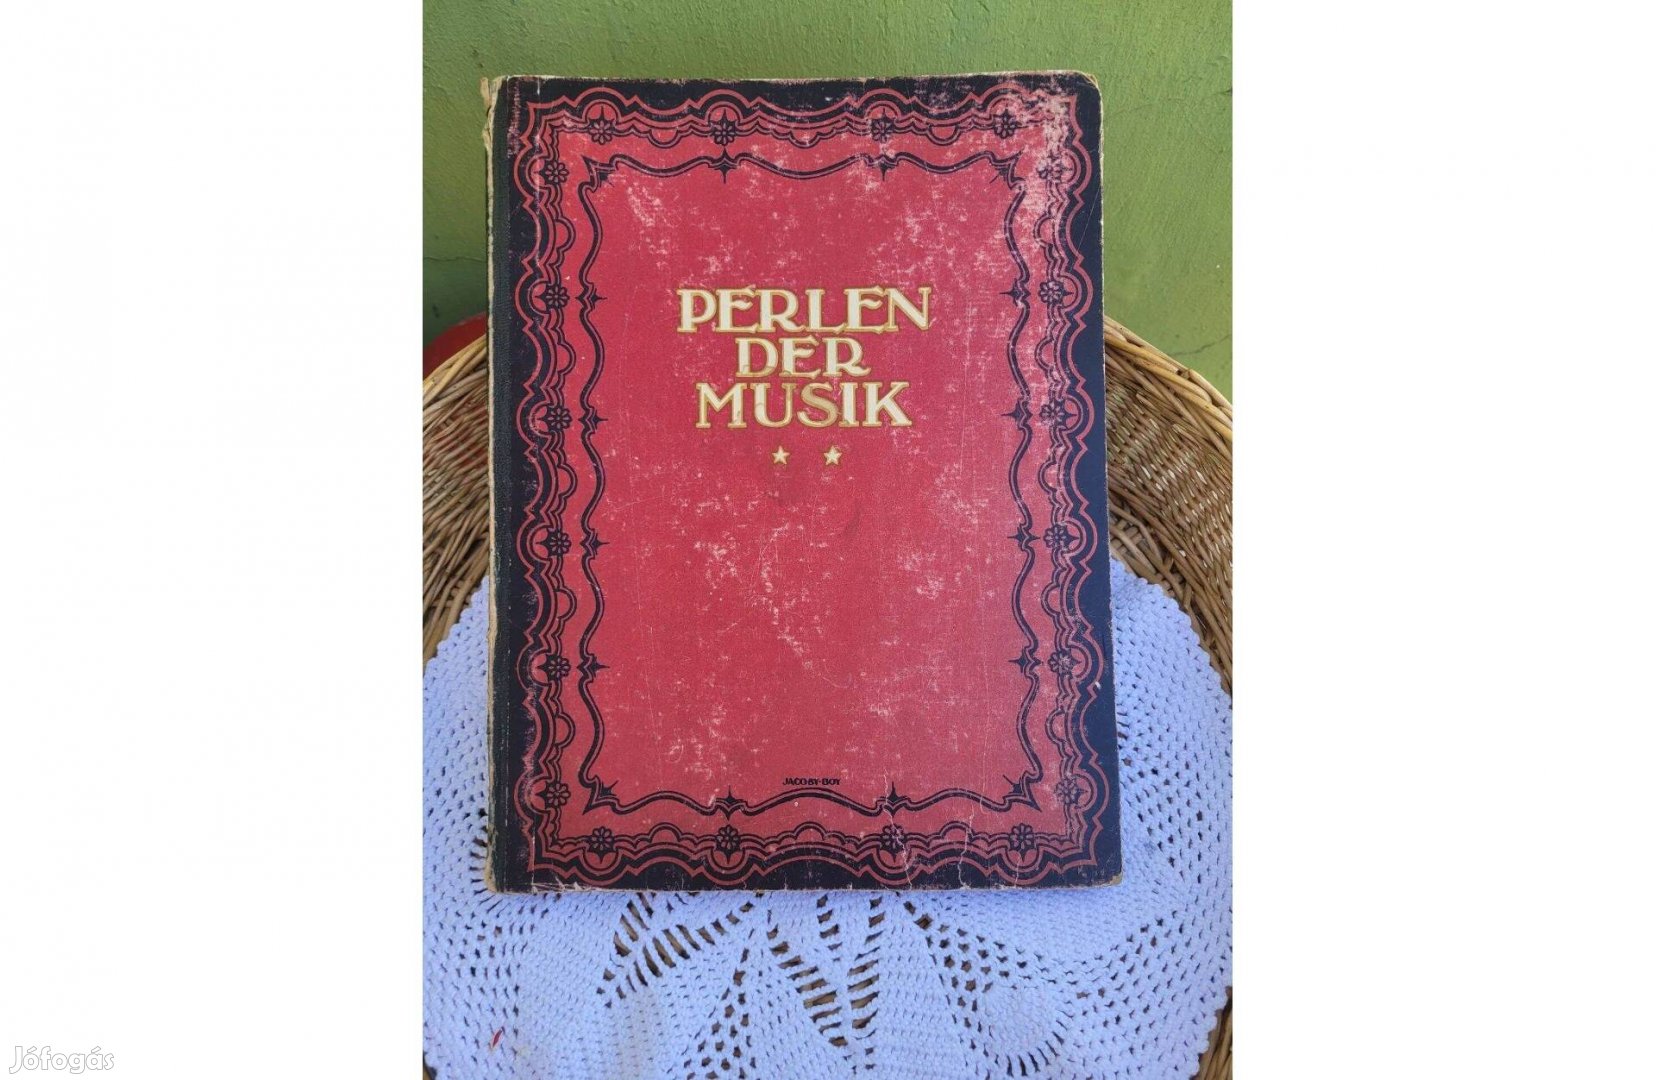 Perlen der musik: 36 népszerű sláger a 20-as évekből kotta könyv